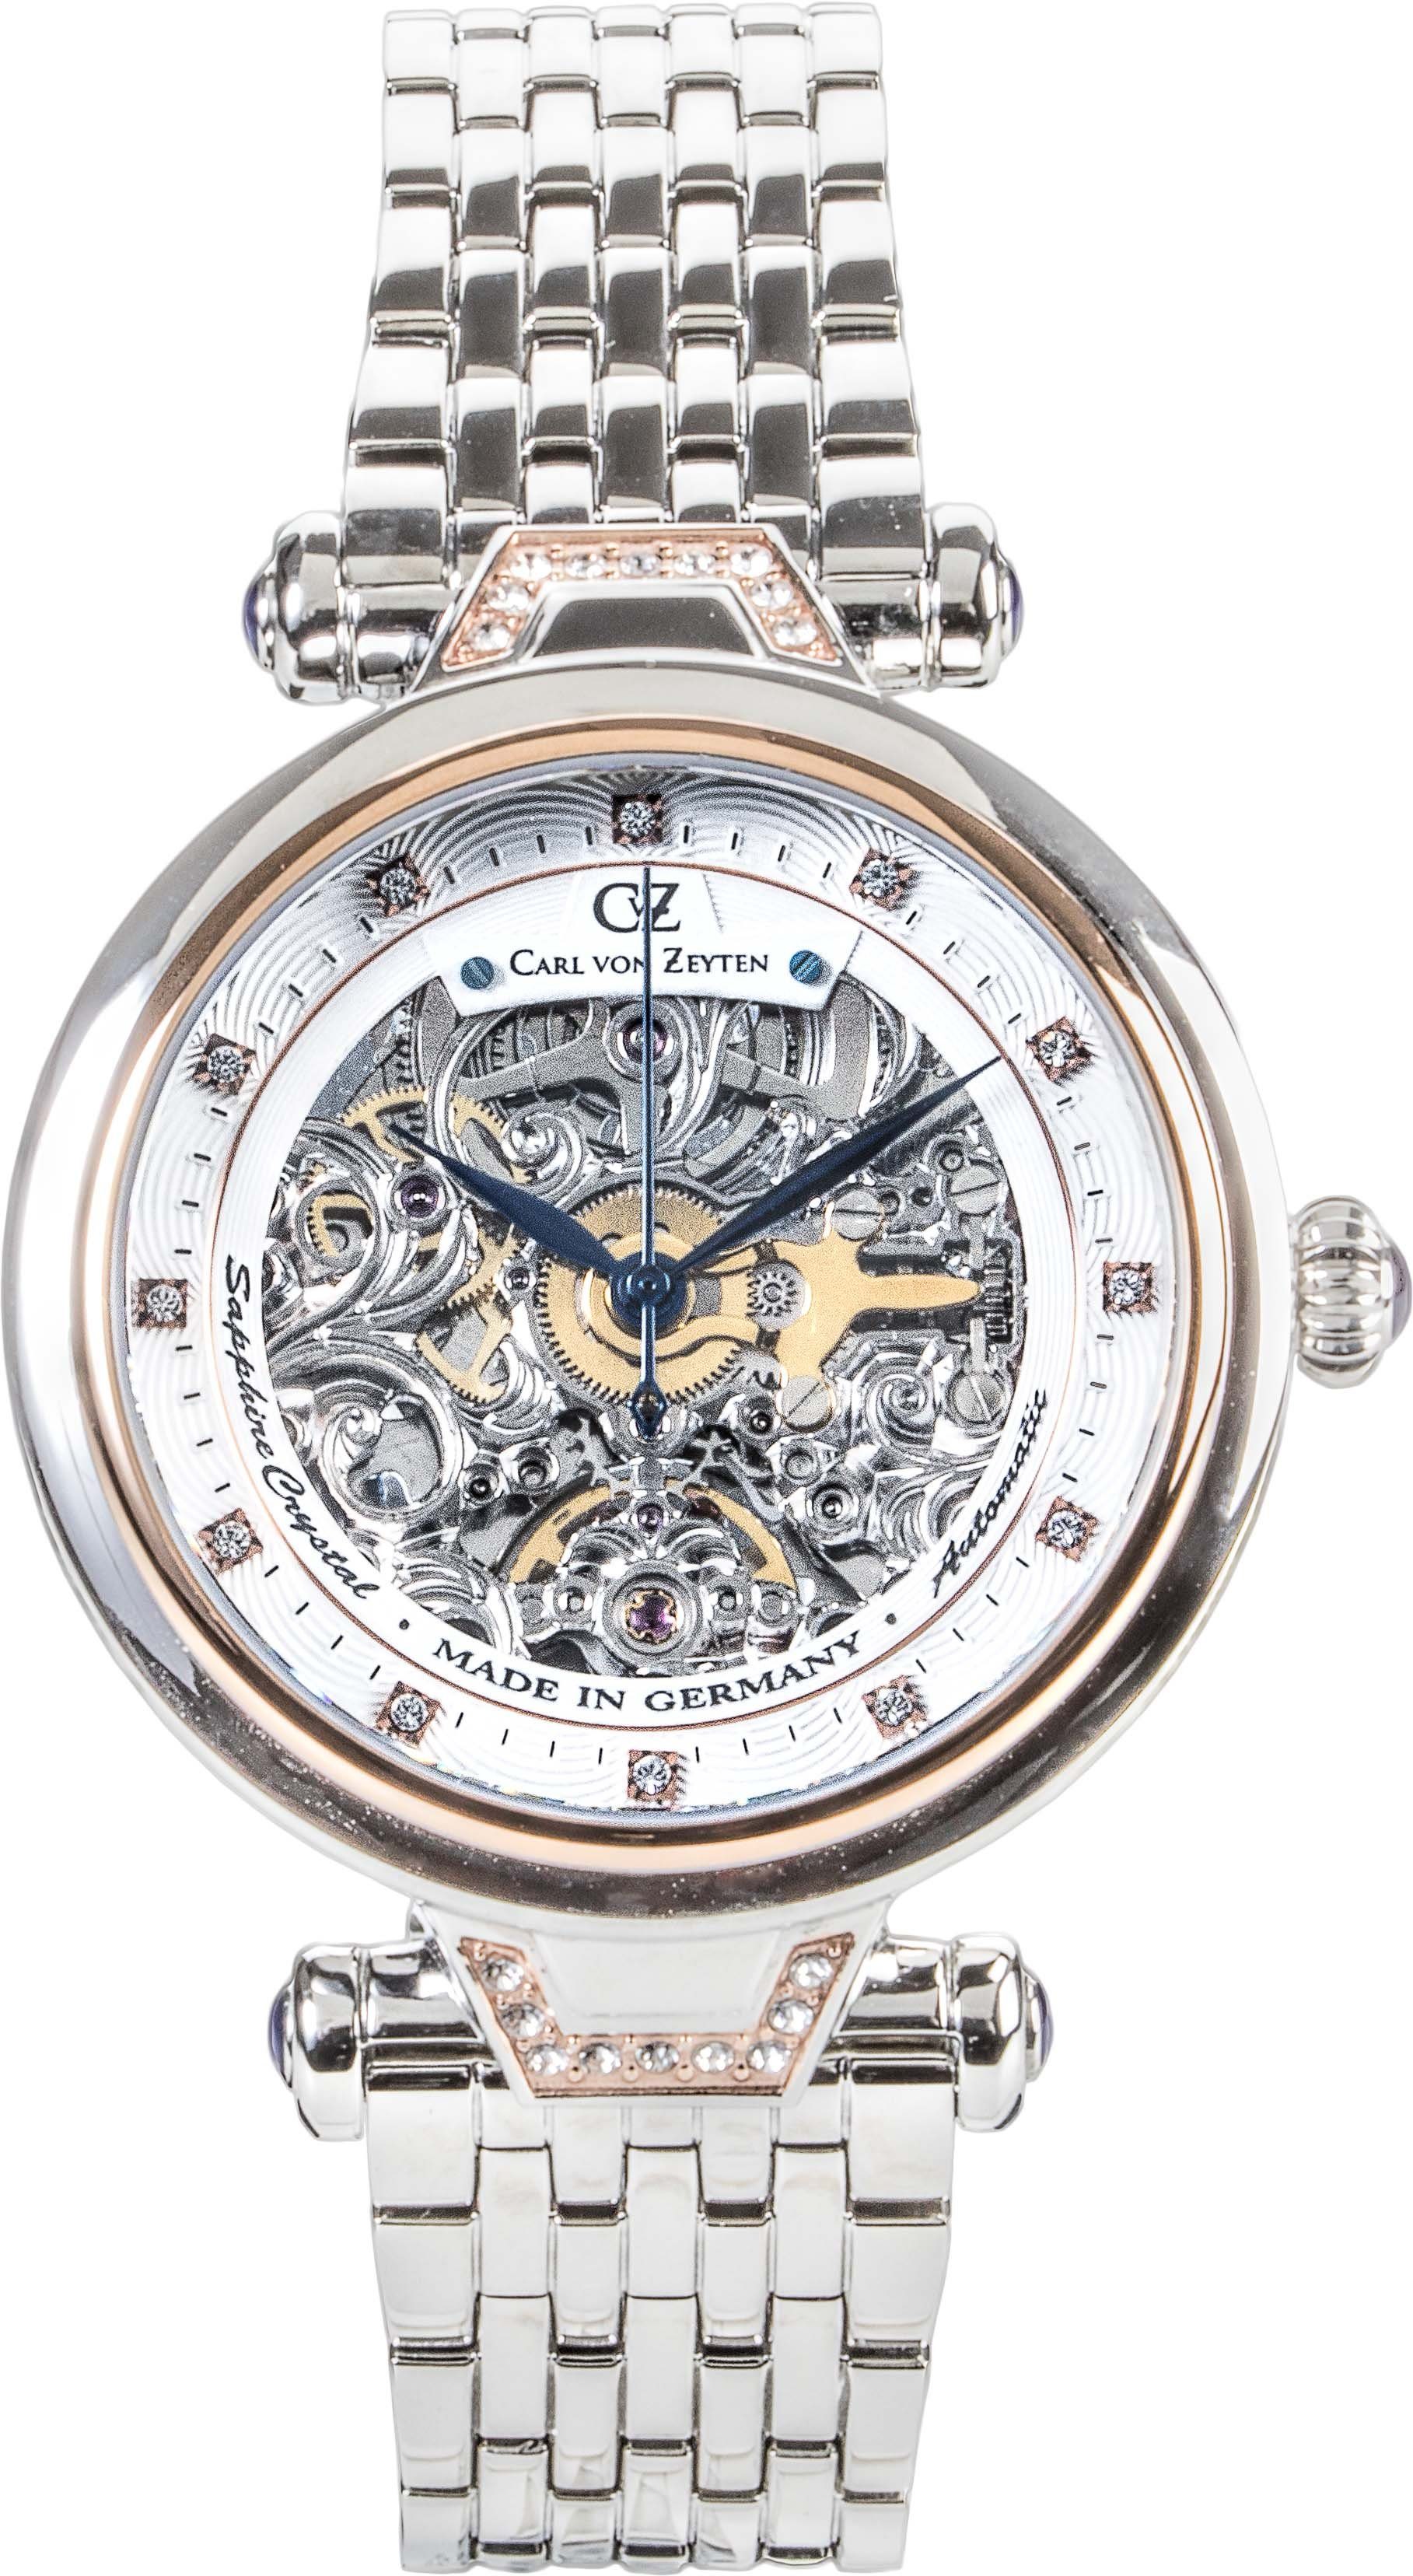 Carl von Zeyten Automatikuhr Simonswald, CVZ0070RWMS, Armbanduhr, Damenuhr, Saphirglas, Made in Germany, Mechanische Uhr